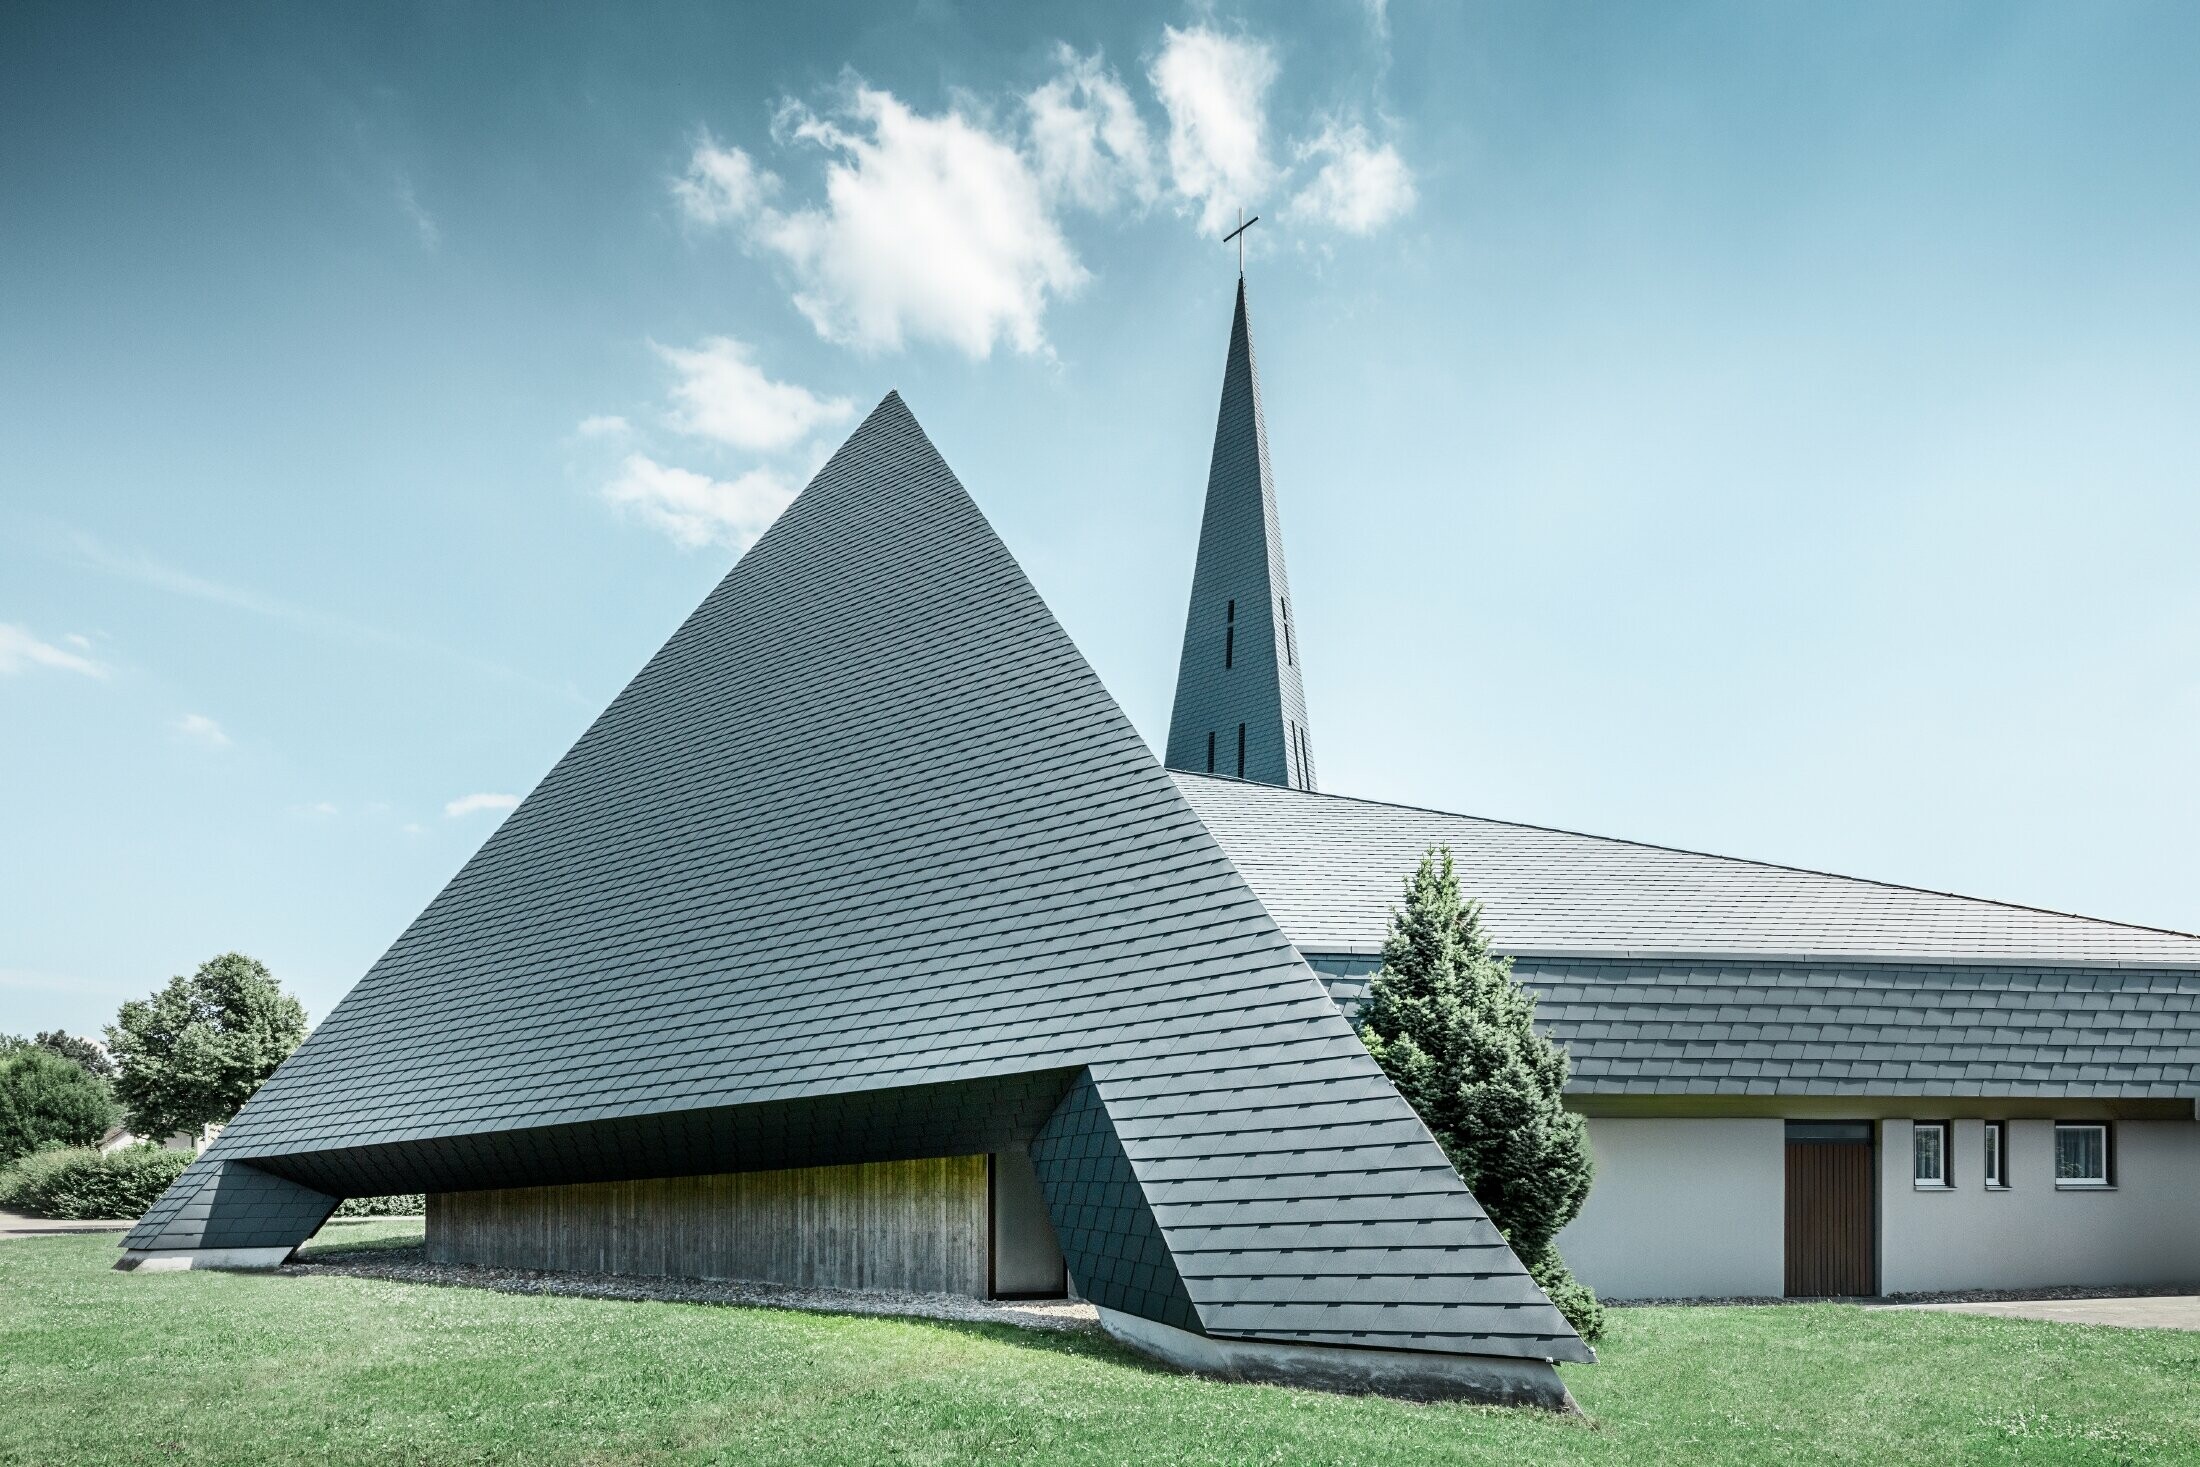 Chiesa cattolica a Langenau con un design piramidale rivestita in scandole PREFA in antracite